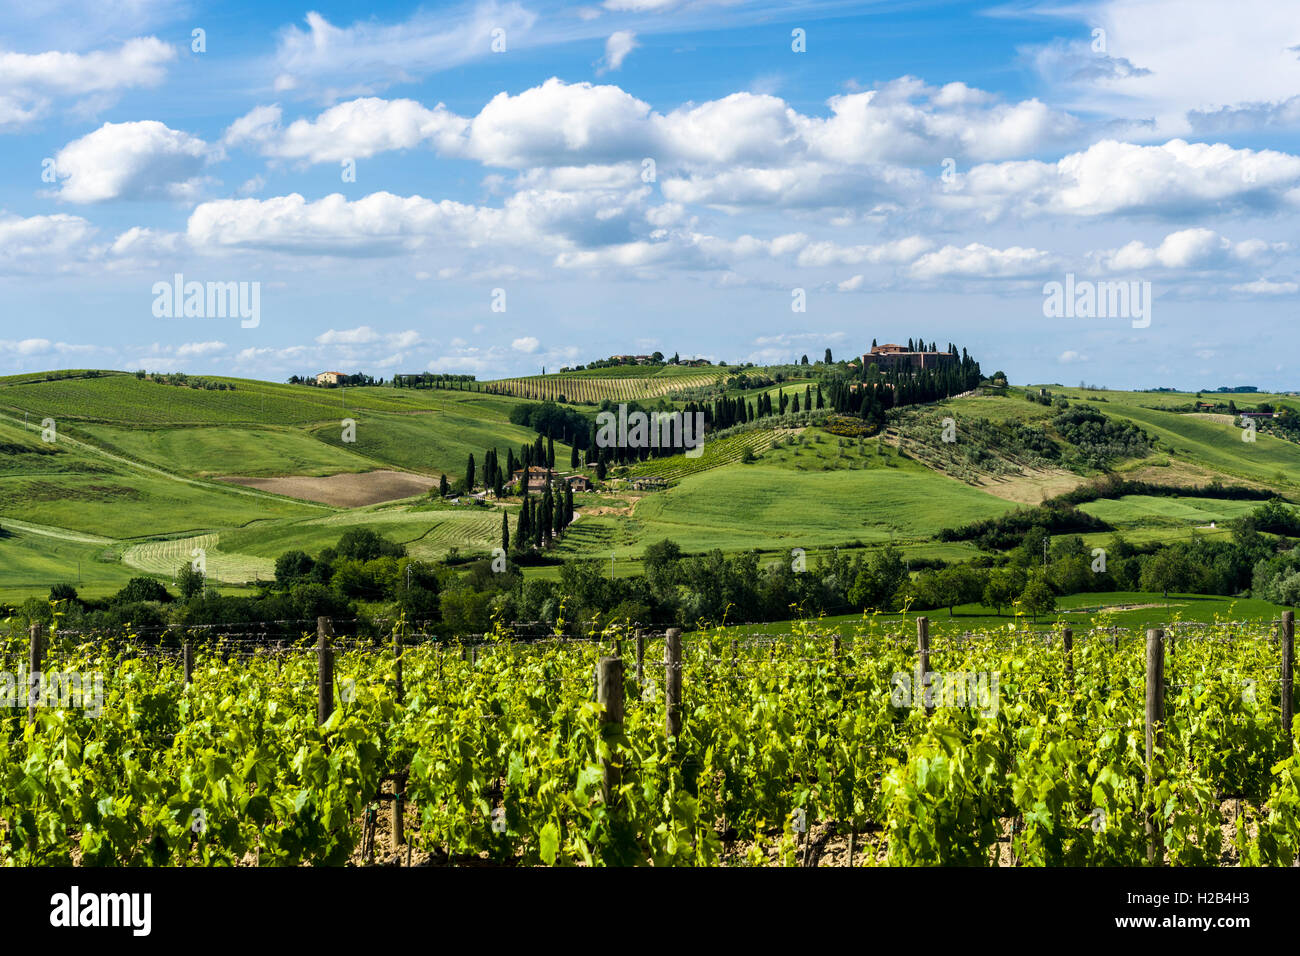 Vert typique toscane paysage avec une ferme sur une colline, vignes, oliveraies, ciel bleu, Val d'Orcia Banque D'Images